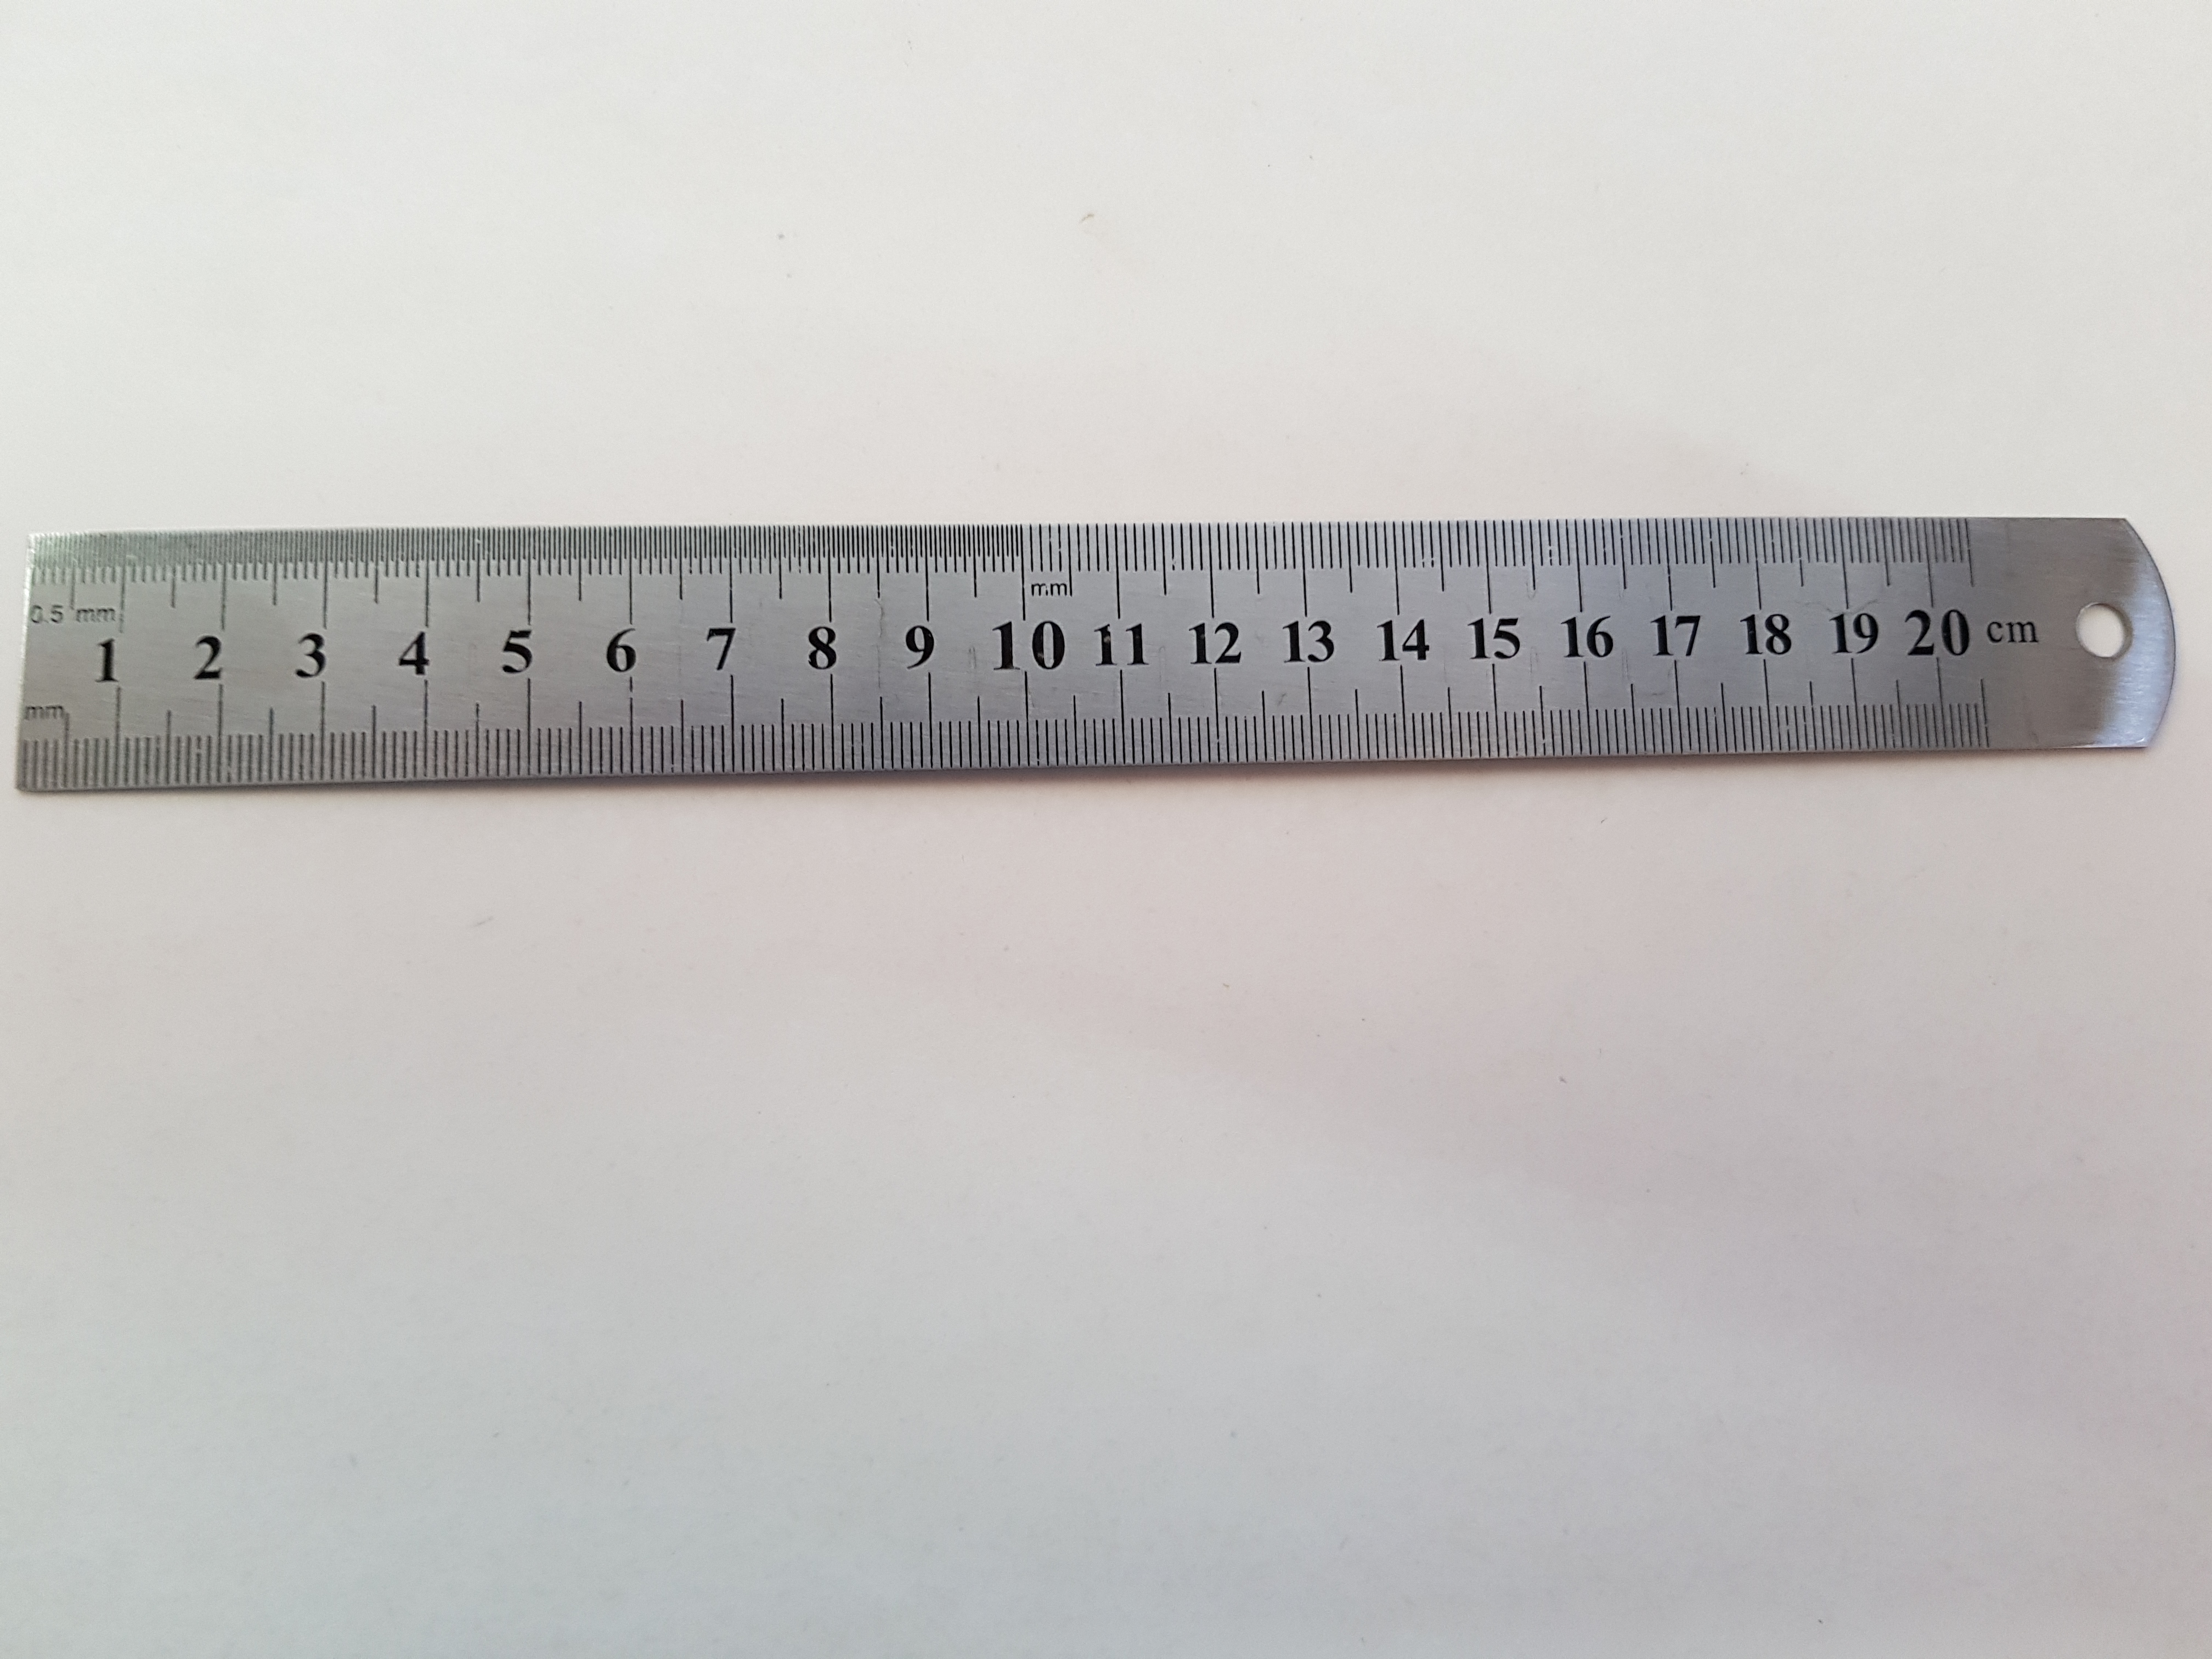 regla metalica de 20 cm